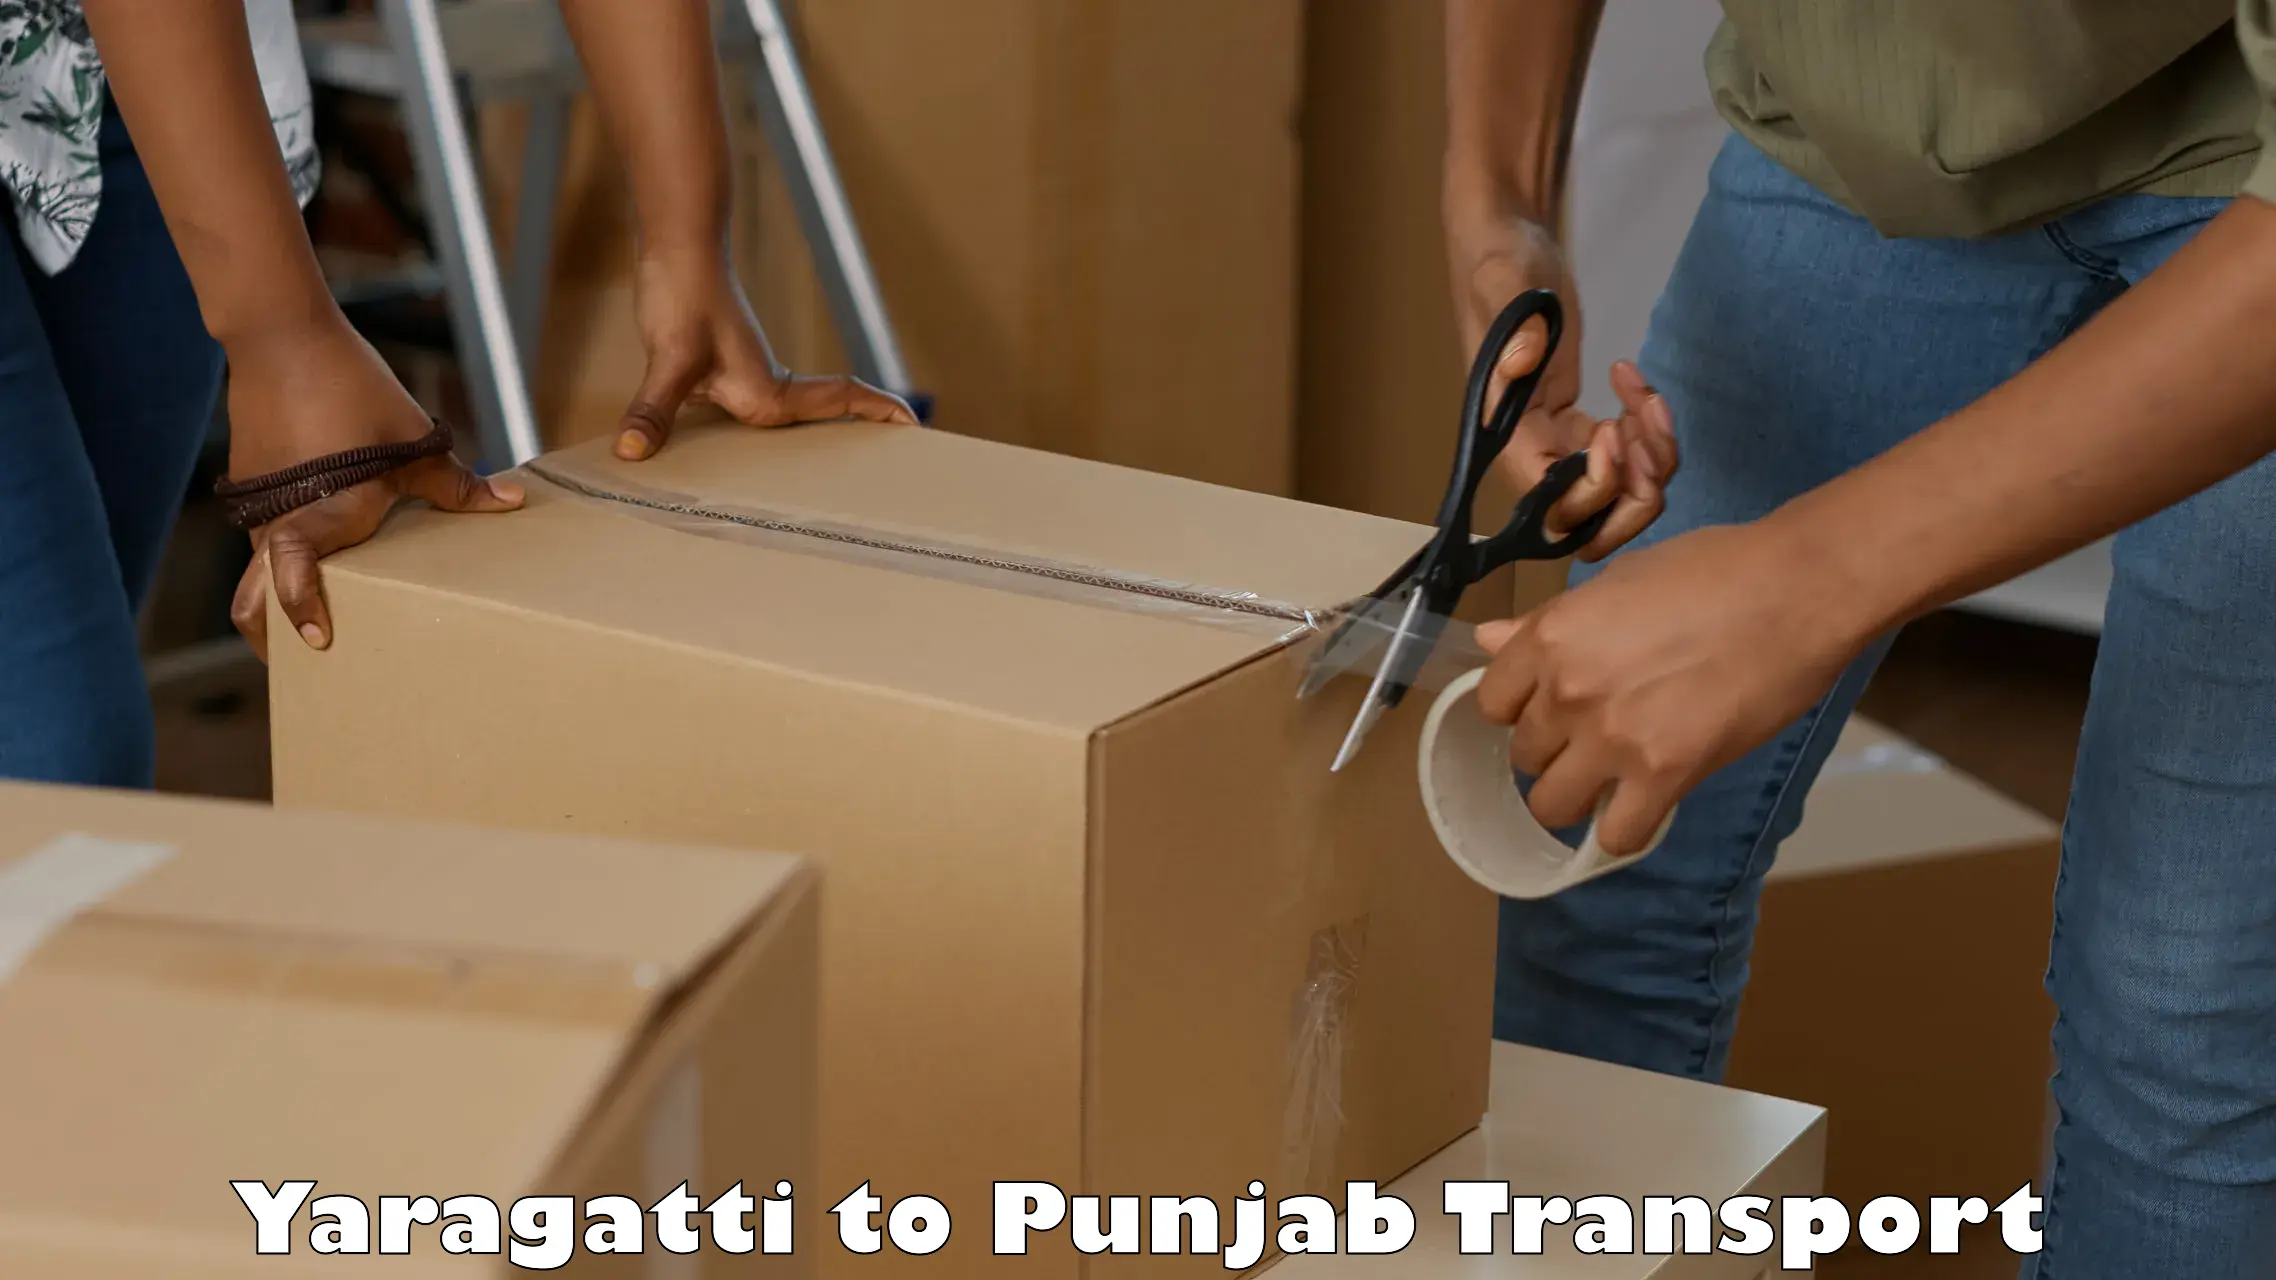 Nearest transport service Yaragatti to Pathankot